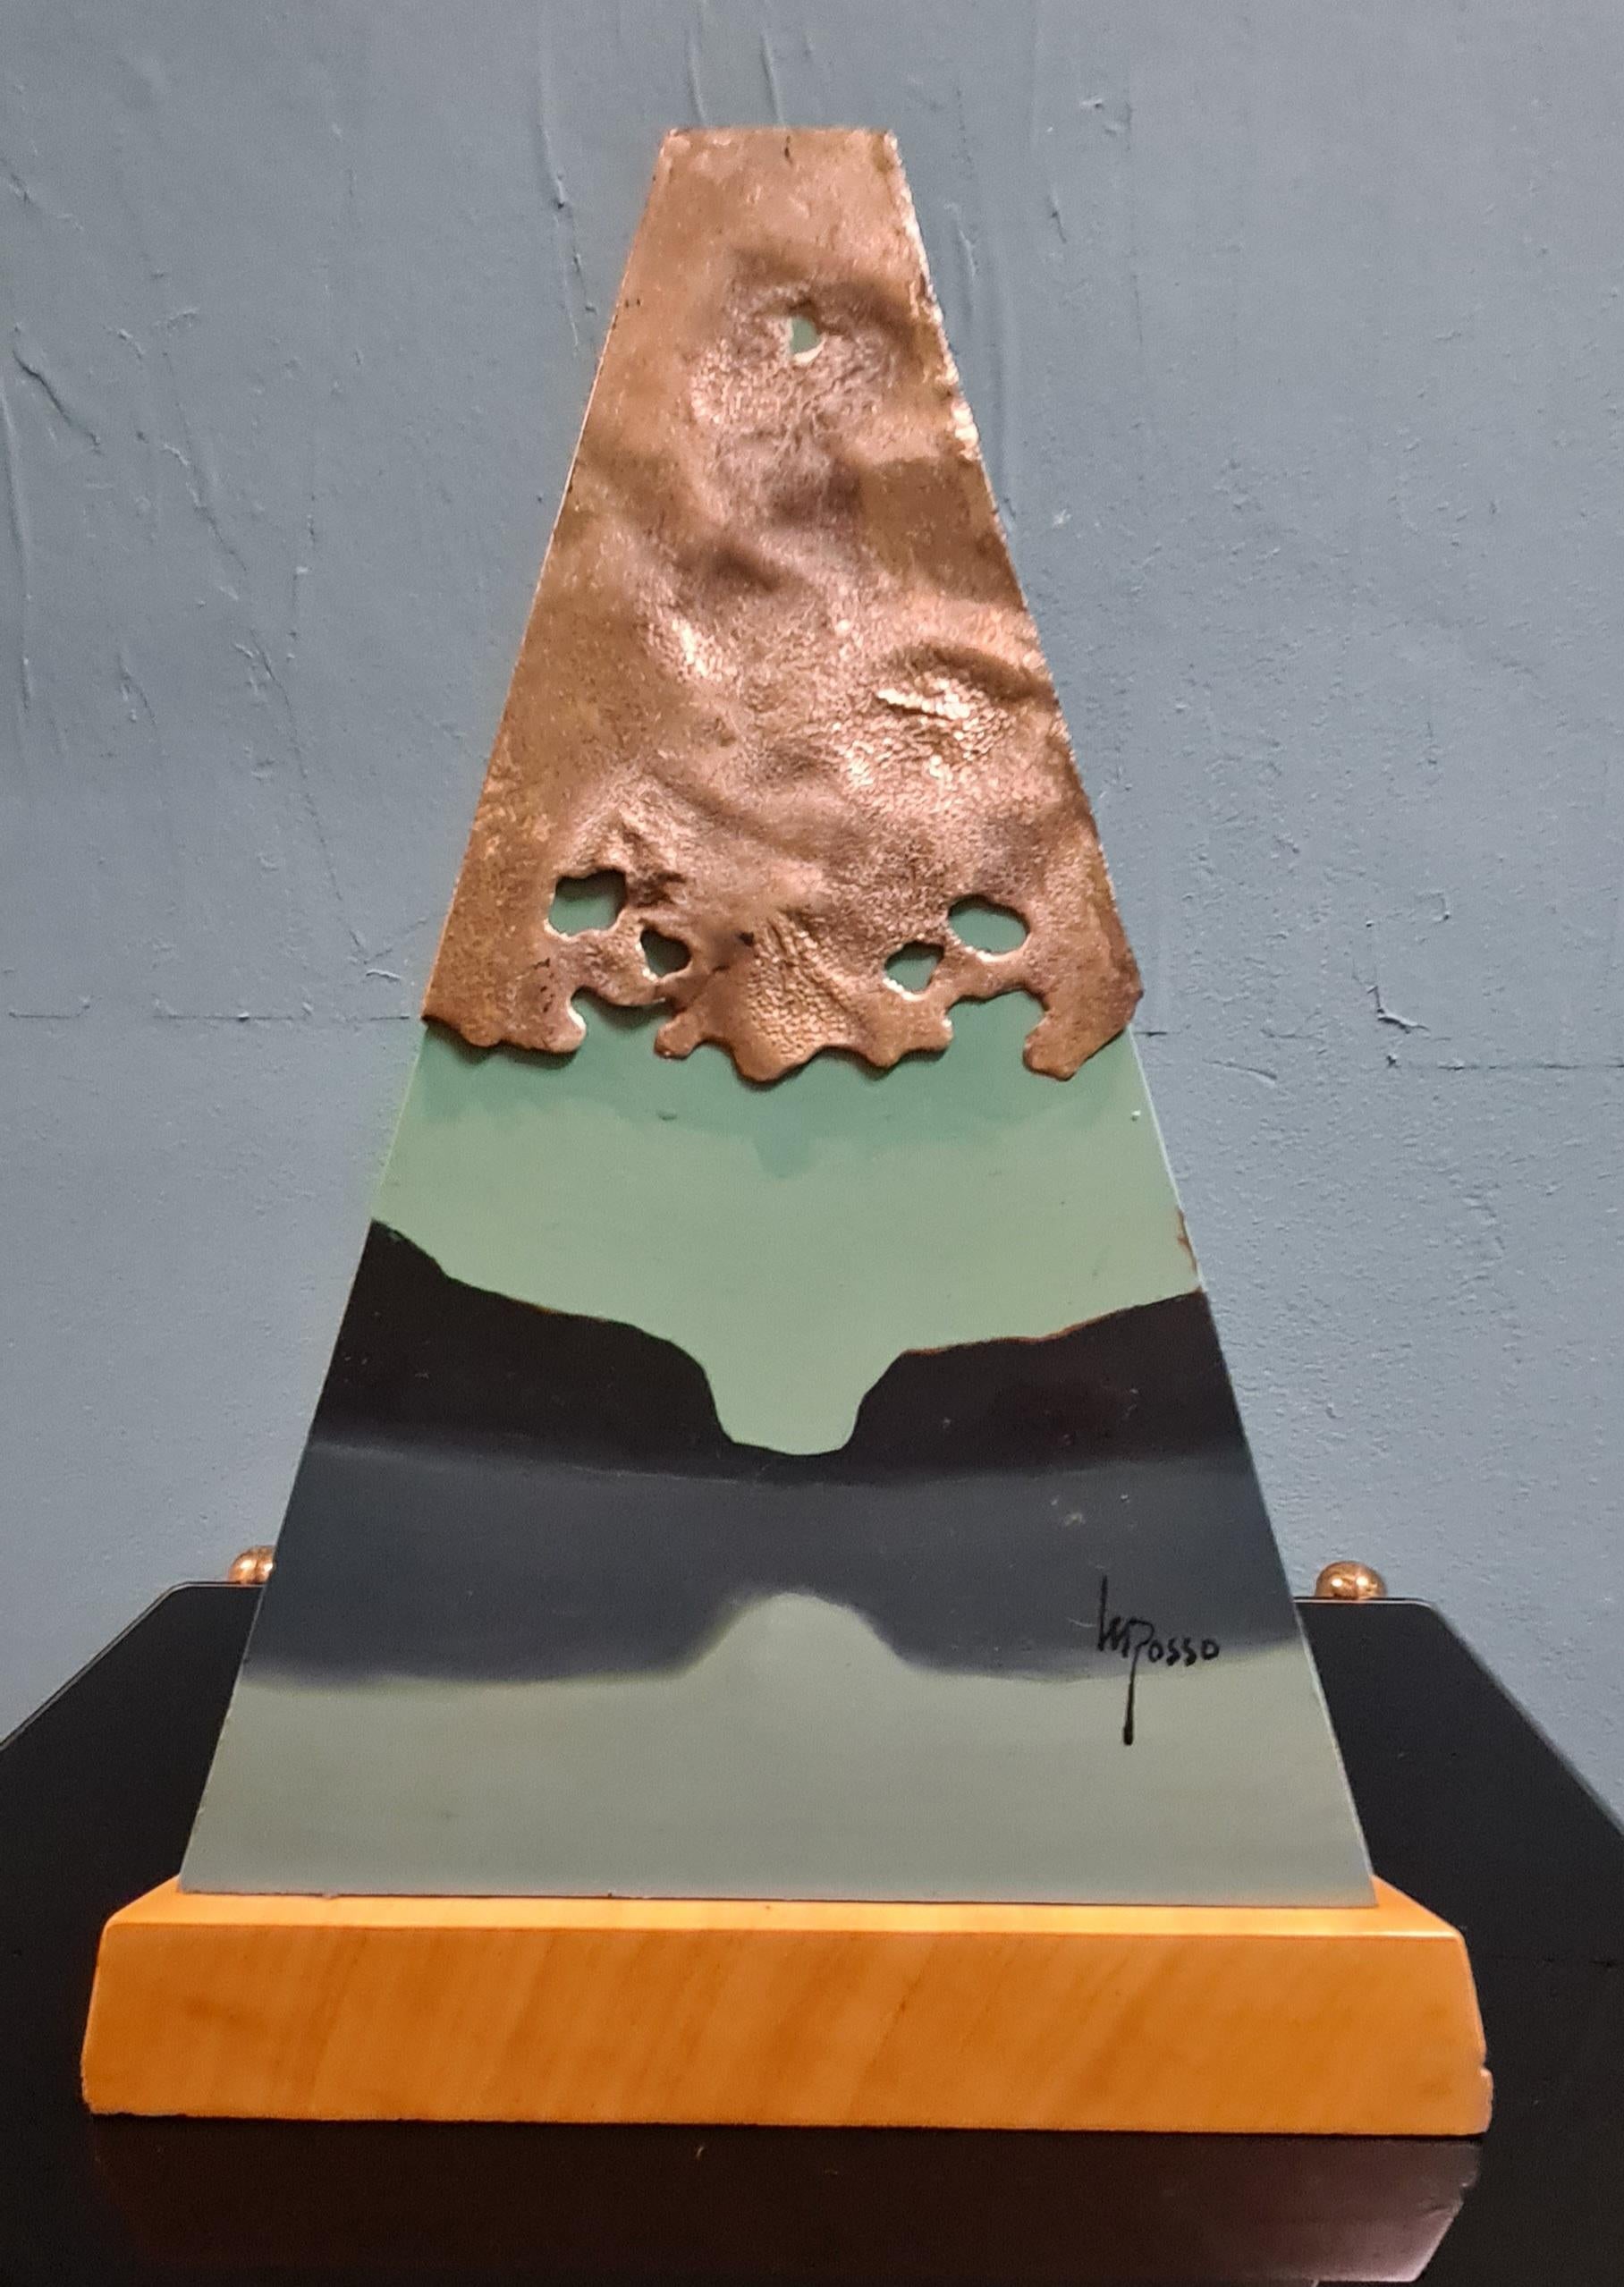 Sculpture de style métaphysique signée par l'artiste Mario Rosso.

La sculpture se compose d'une base triangulaire en bois sur laquelle repose une pyramide en métal peint, décorée d'argent et d'un grand cristal de quartz.

La peinture de style